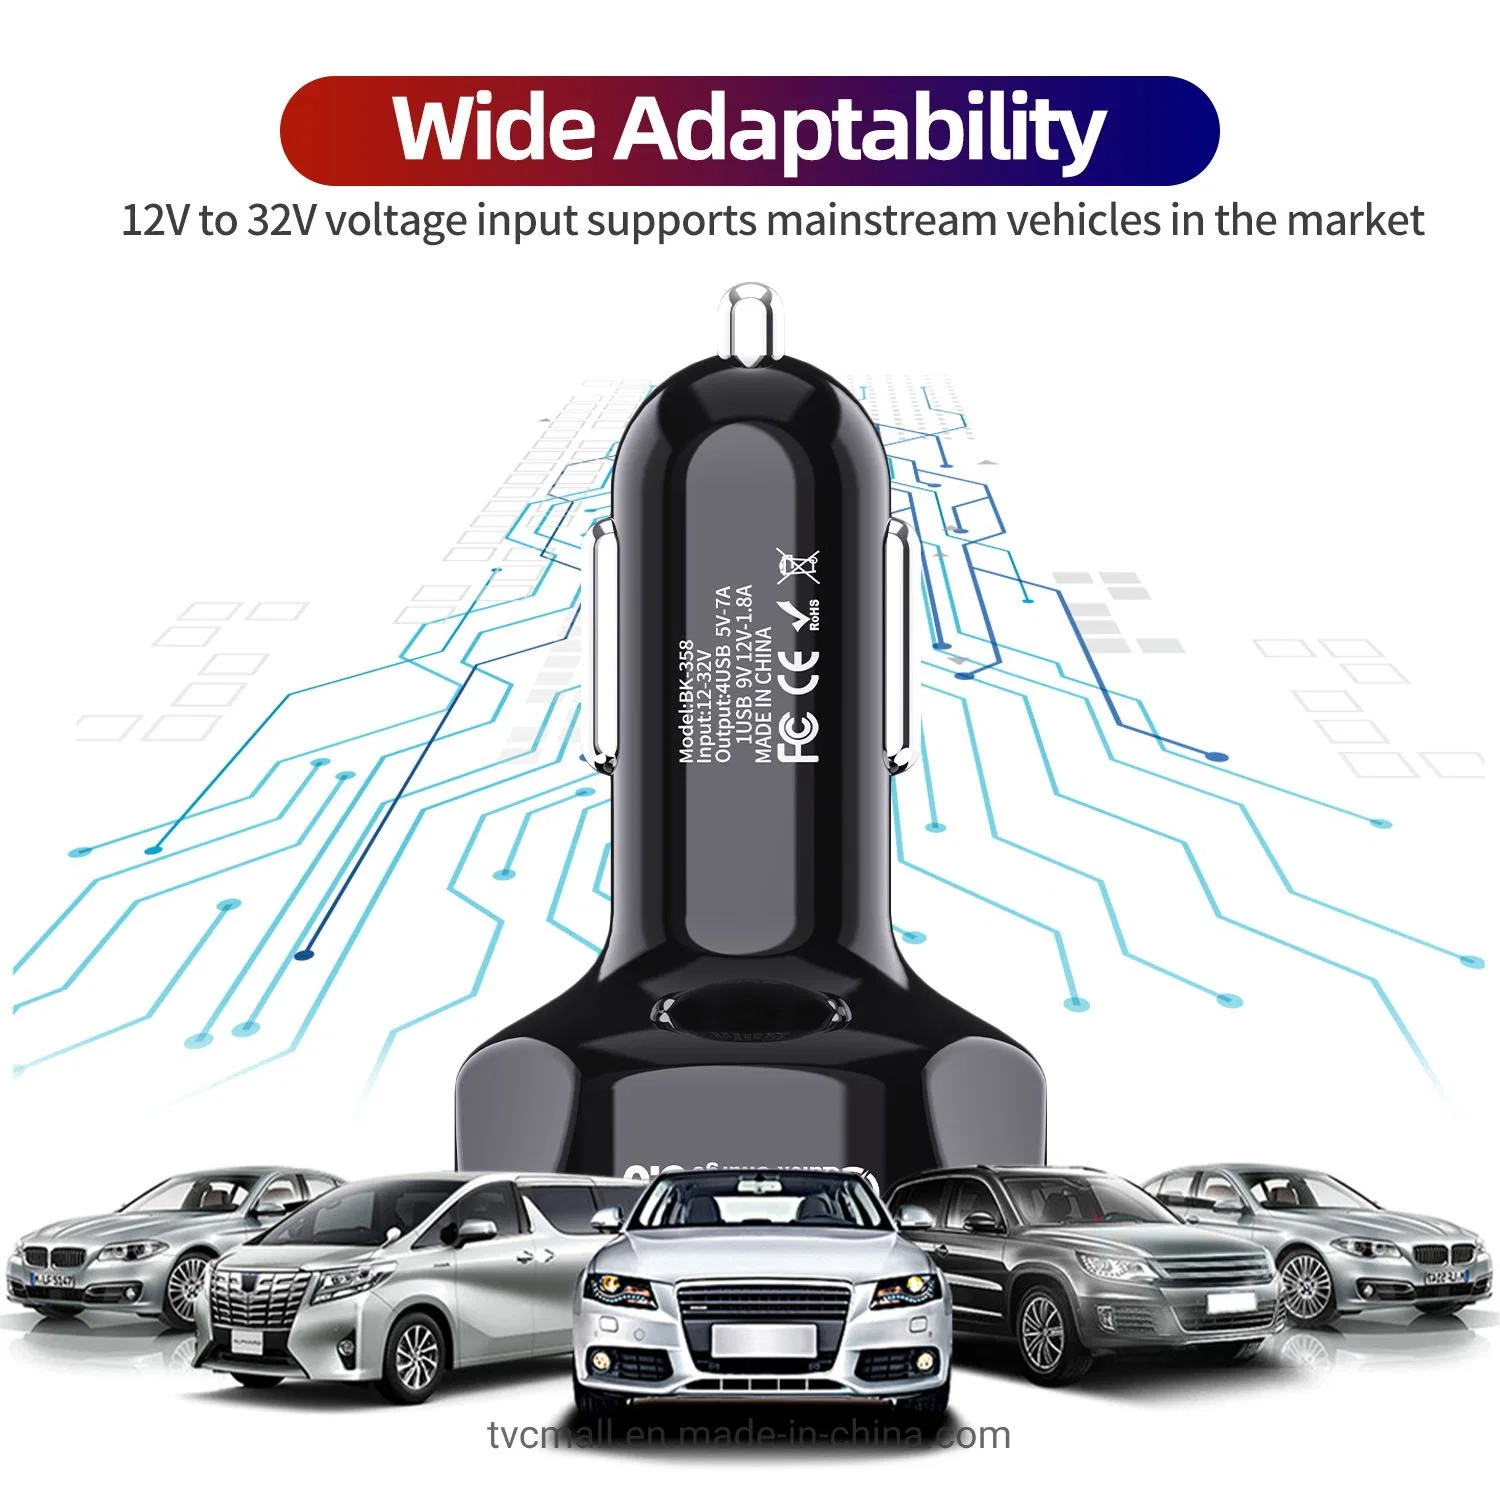 Uslion 4 USB Ports QC 3.0 Fast Charging Car Cigarette Lighter Charger Car Charger- Black